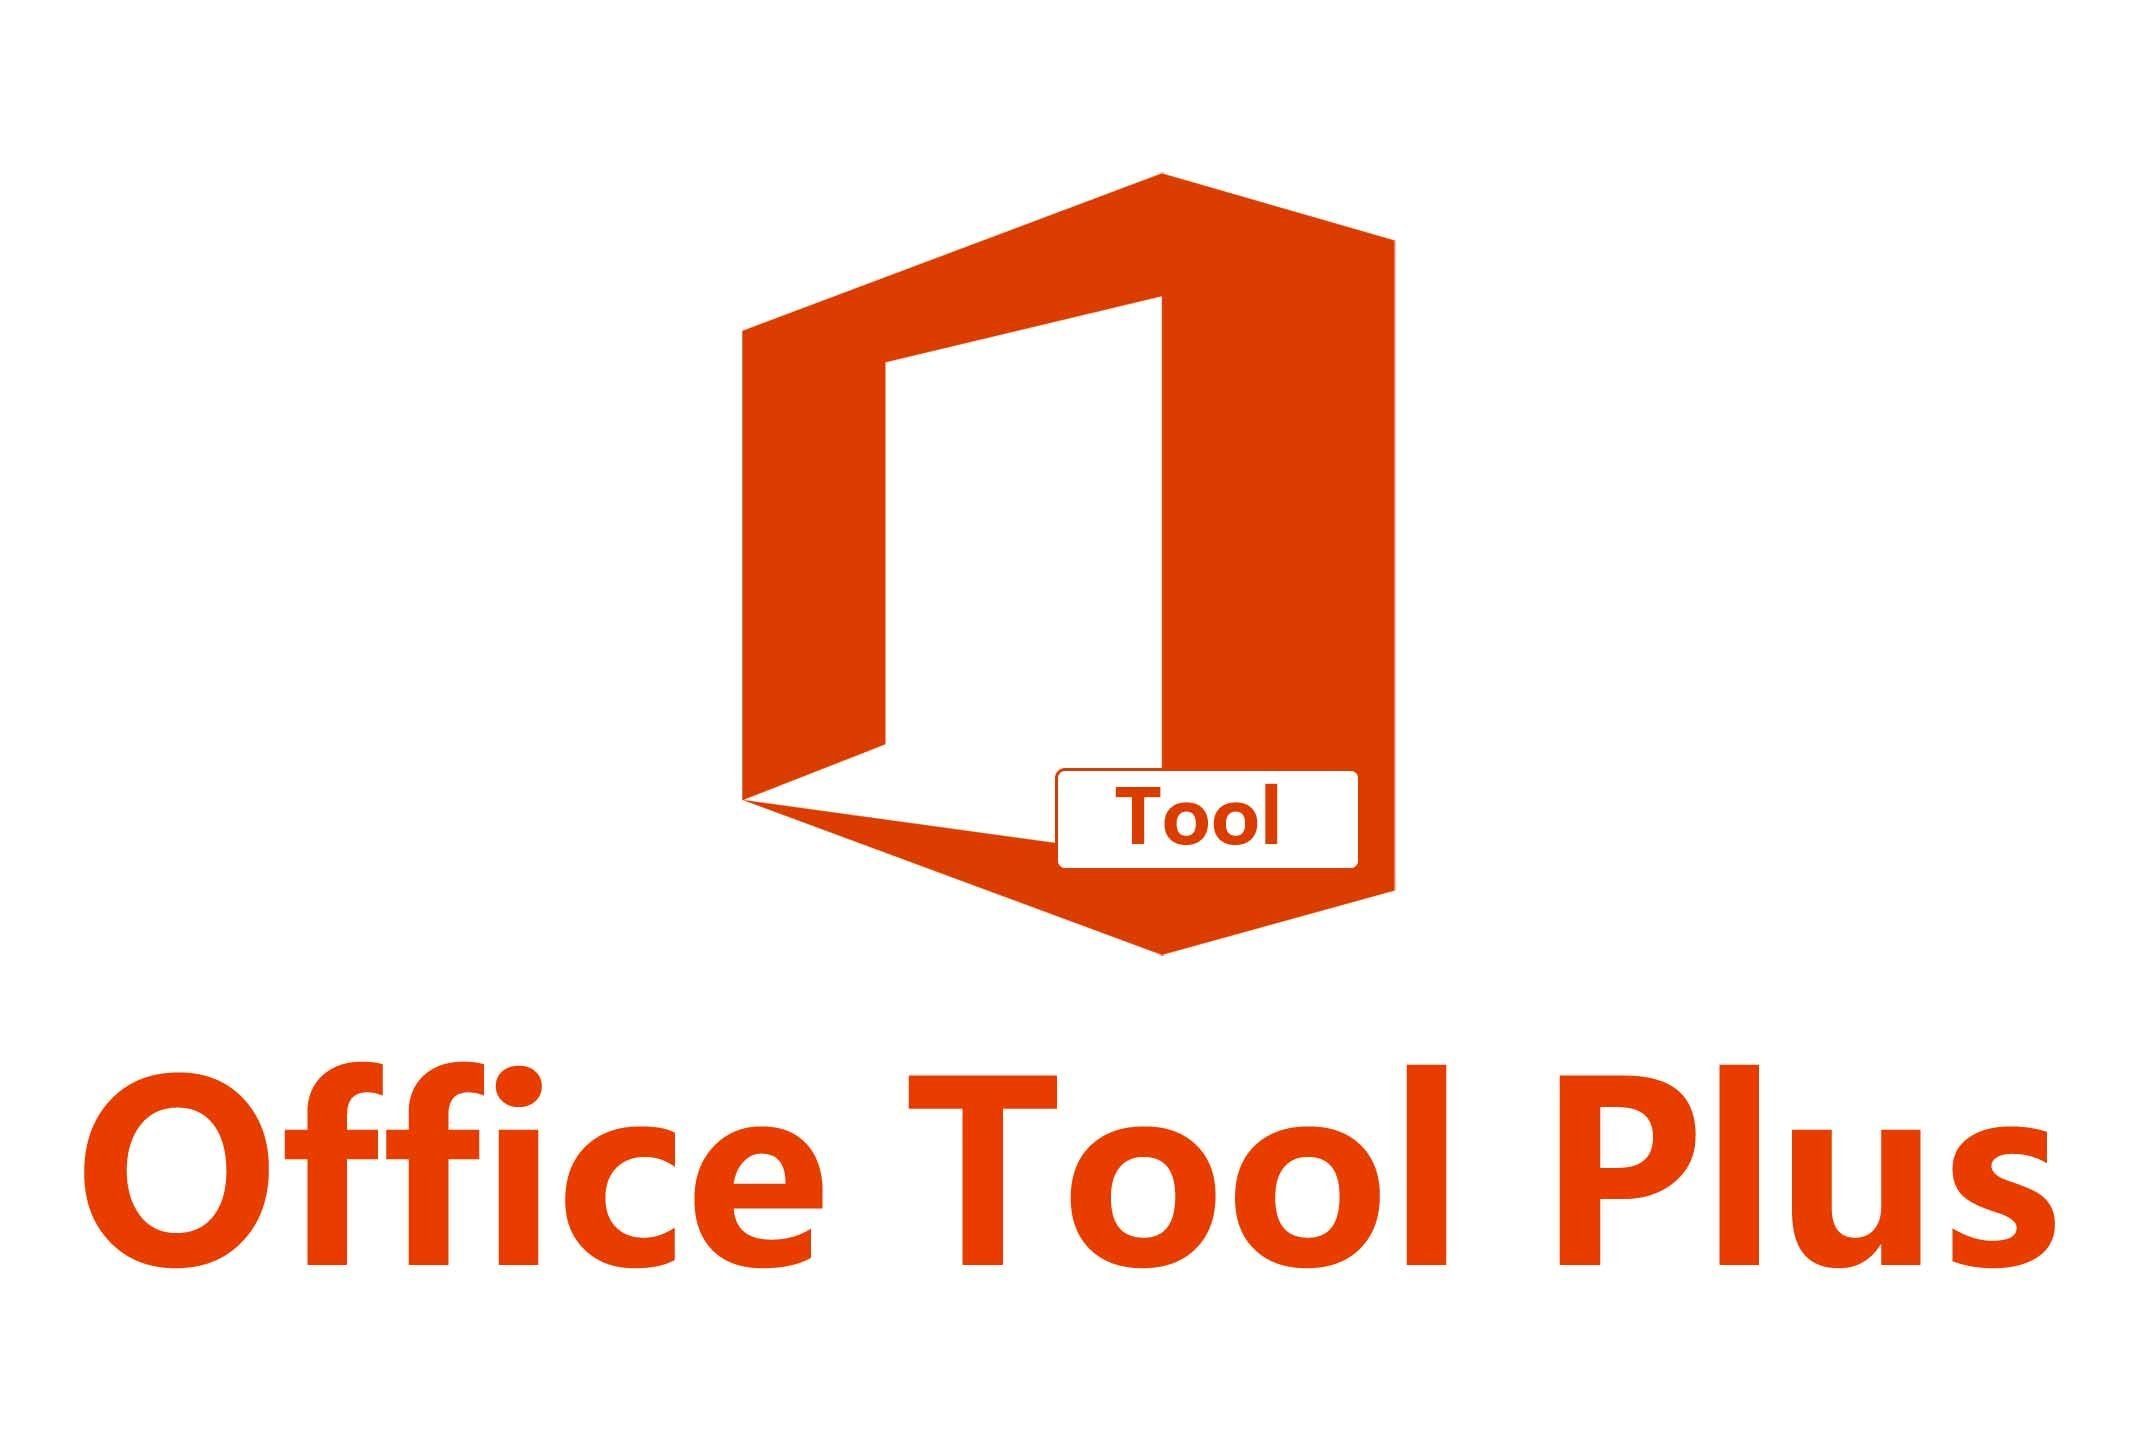 Office Tool Plus - Phần Mềm Hổ Trợ Cài Đặt Office Tùy Chọn